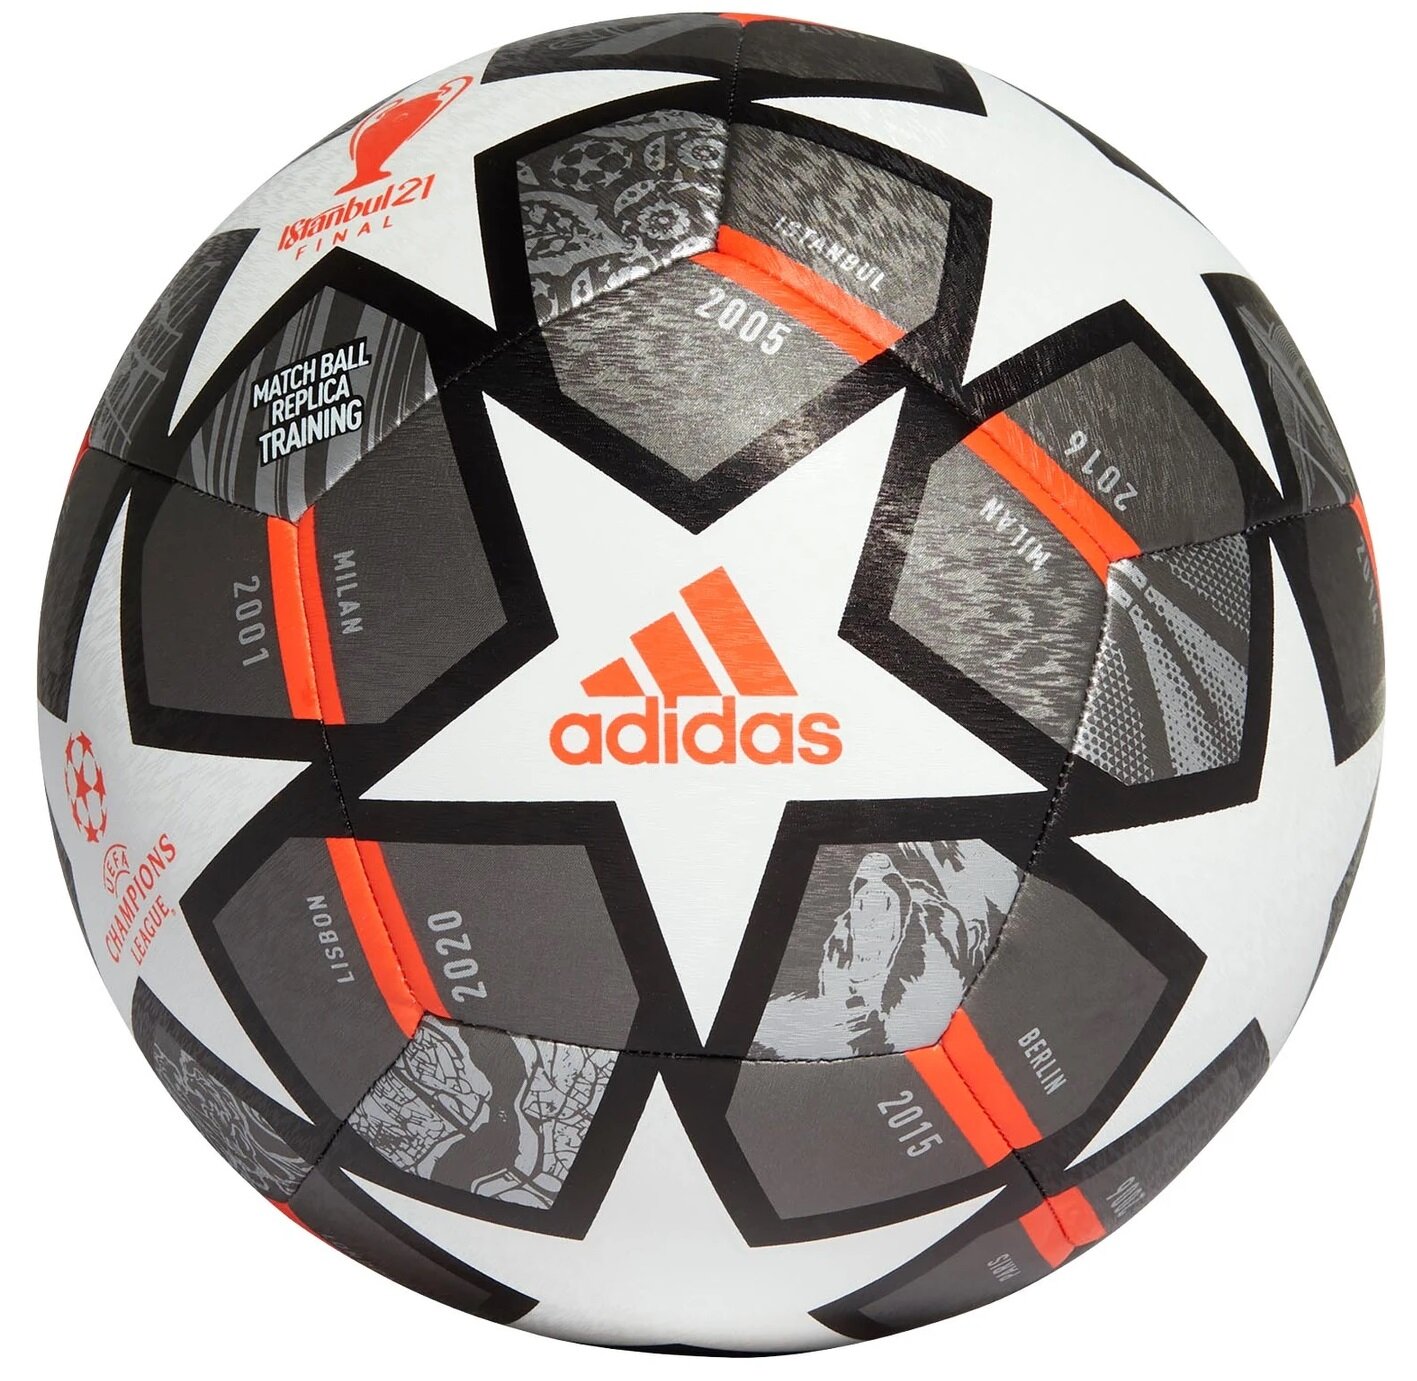 ADIDAS Finale 21 20th Anniversary UCL Texture Training GK3476 (rozmiar 4)  Piłka nożna - niskie ceny i opinie w Media Expert